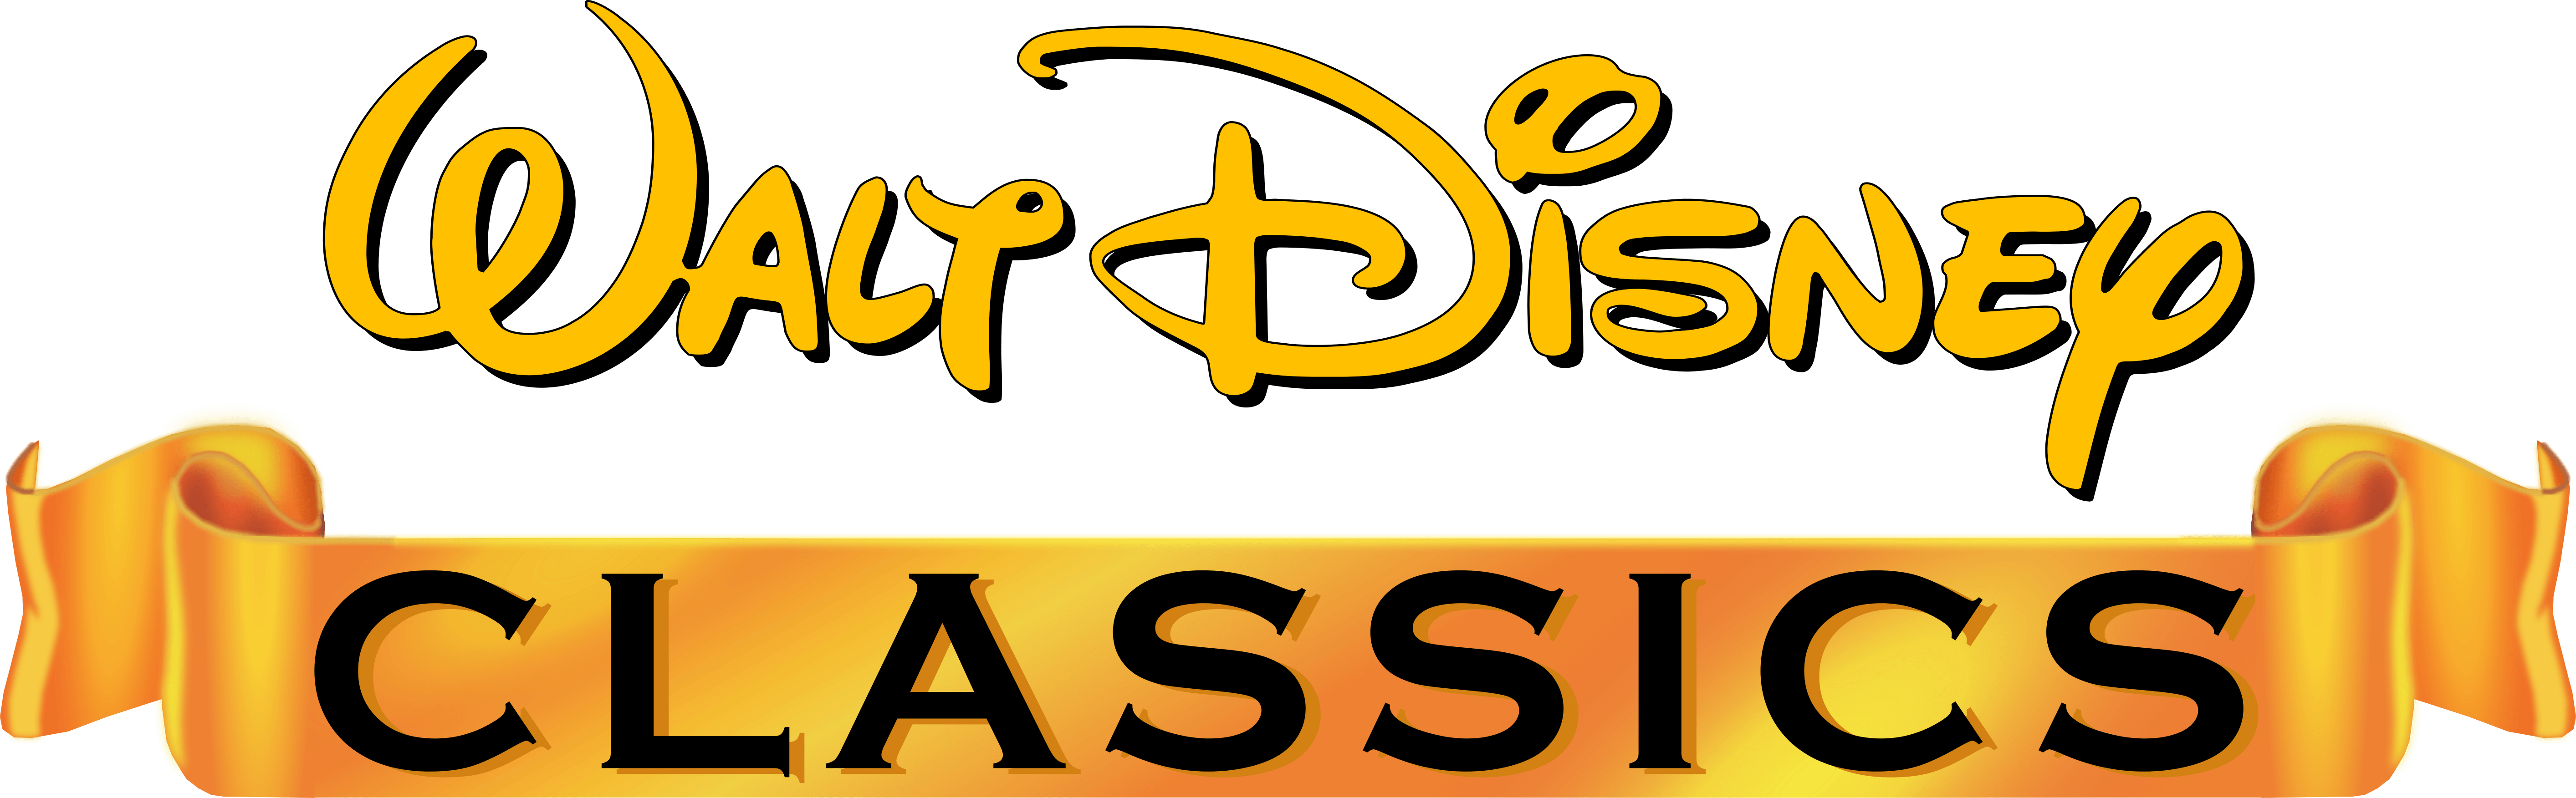 Walt Disney Gold Classic Collection Logo - All about Walt Disney Gold Classic Collection Disney Wiki Fandom ...